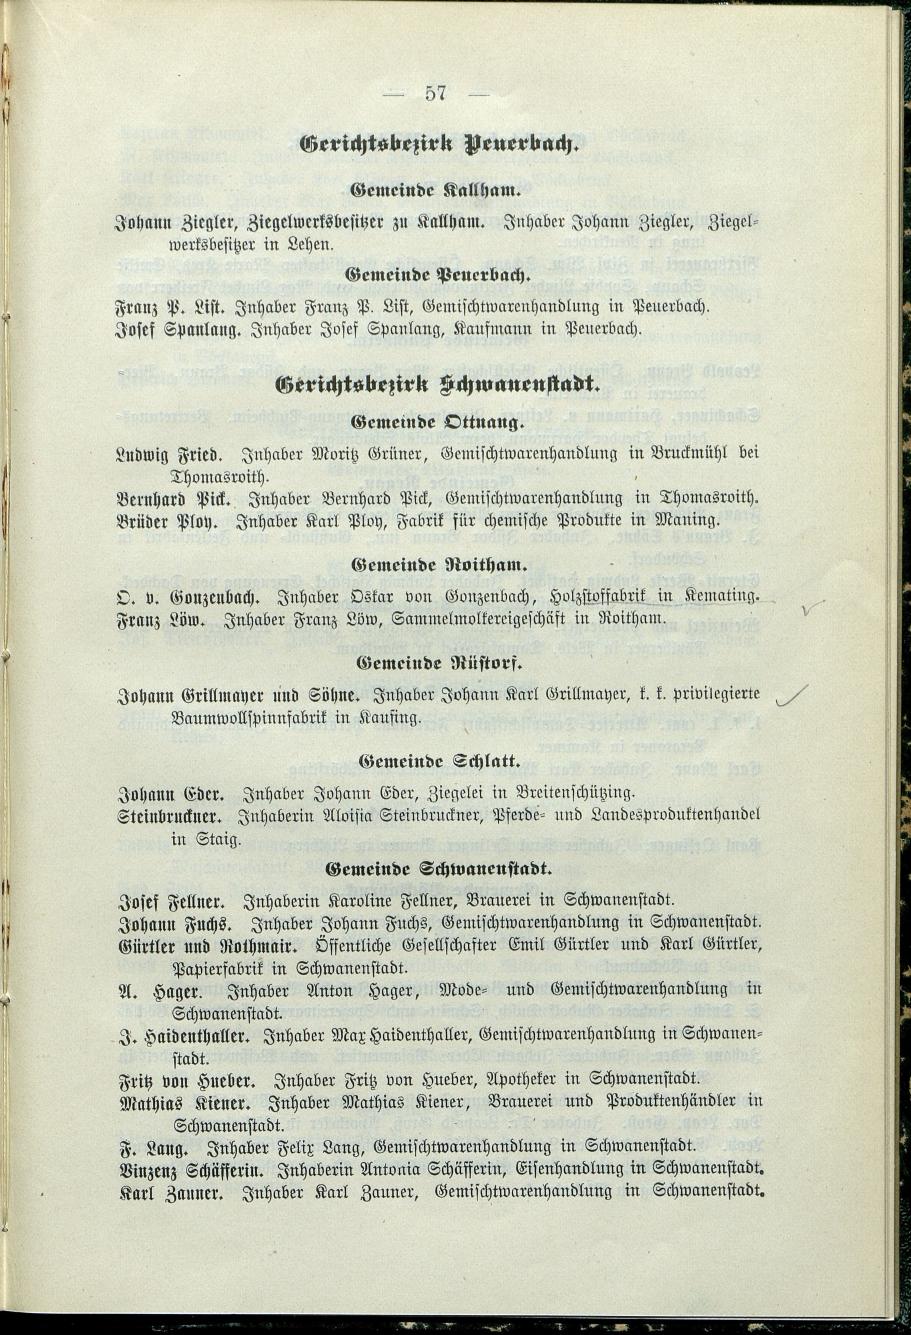 Verzeichnis der protokollierten Firmen und Genossenschaften in Oberösterreich 1908 - Seite 61